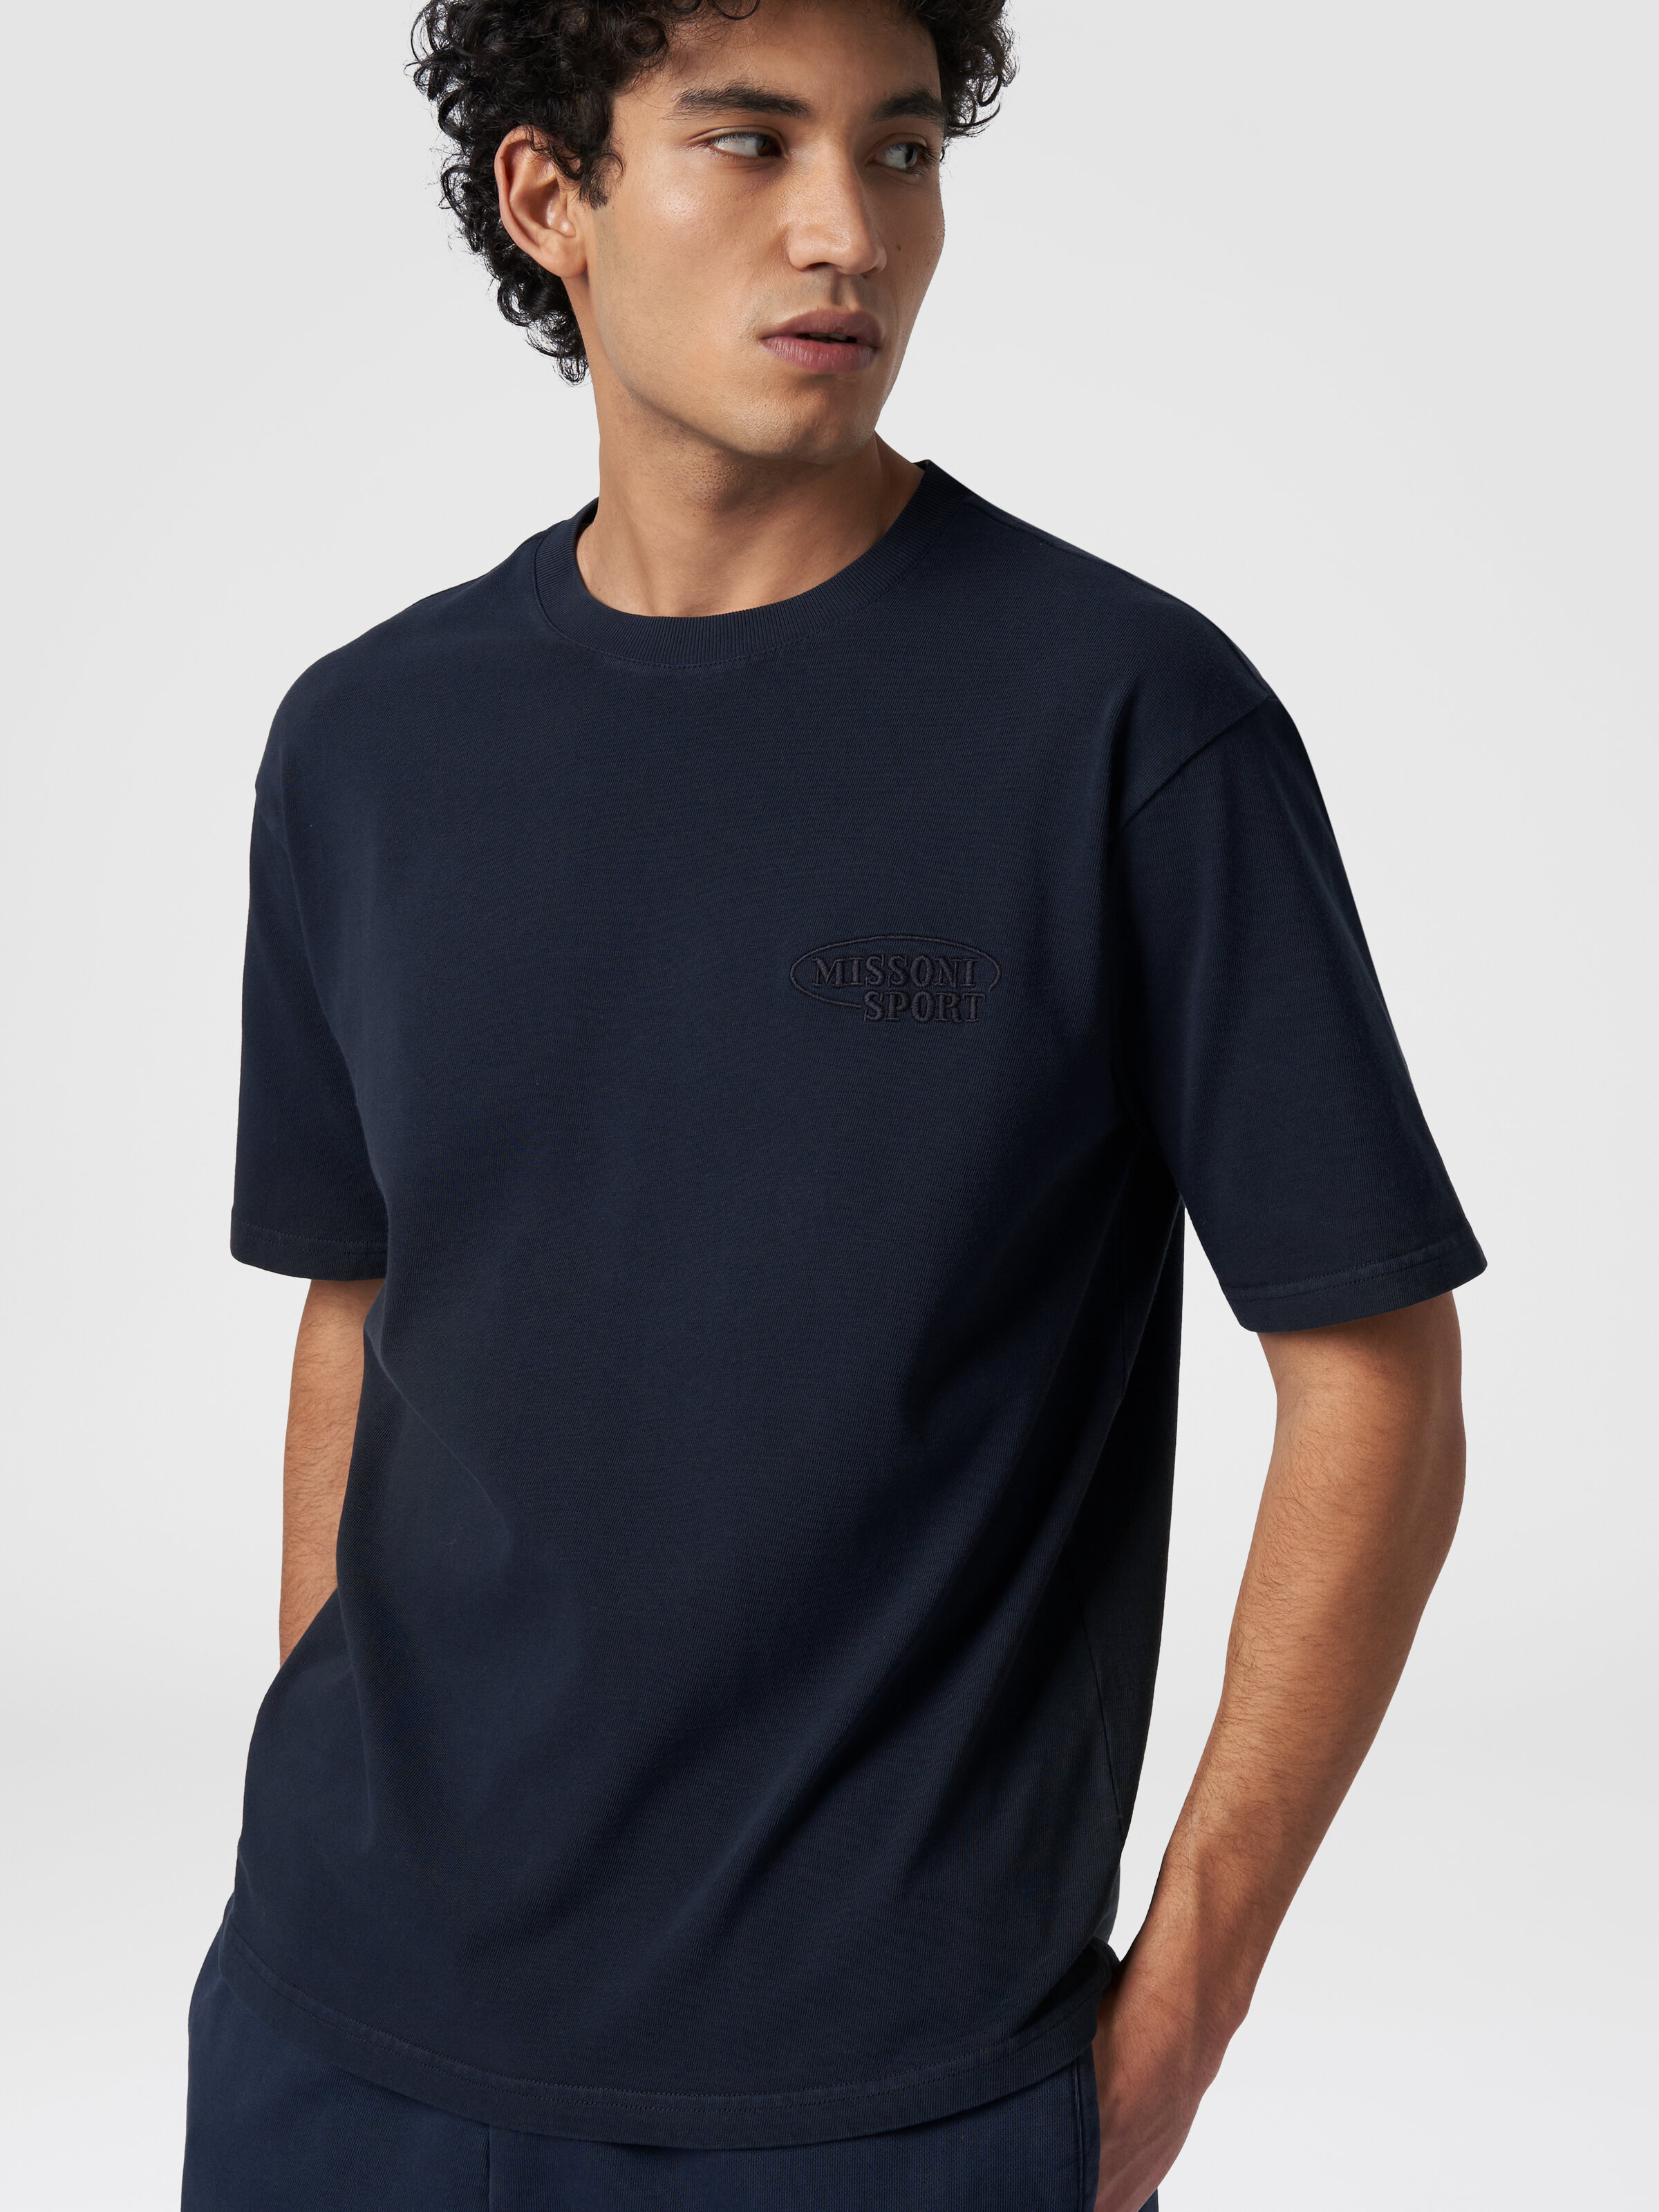 Camiseta de cuello redondo de algodón con logotipo, Azul Marino  - 3